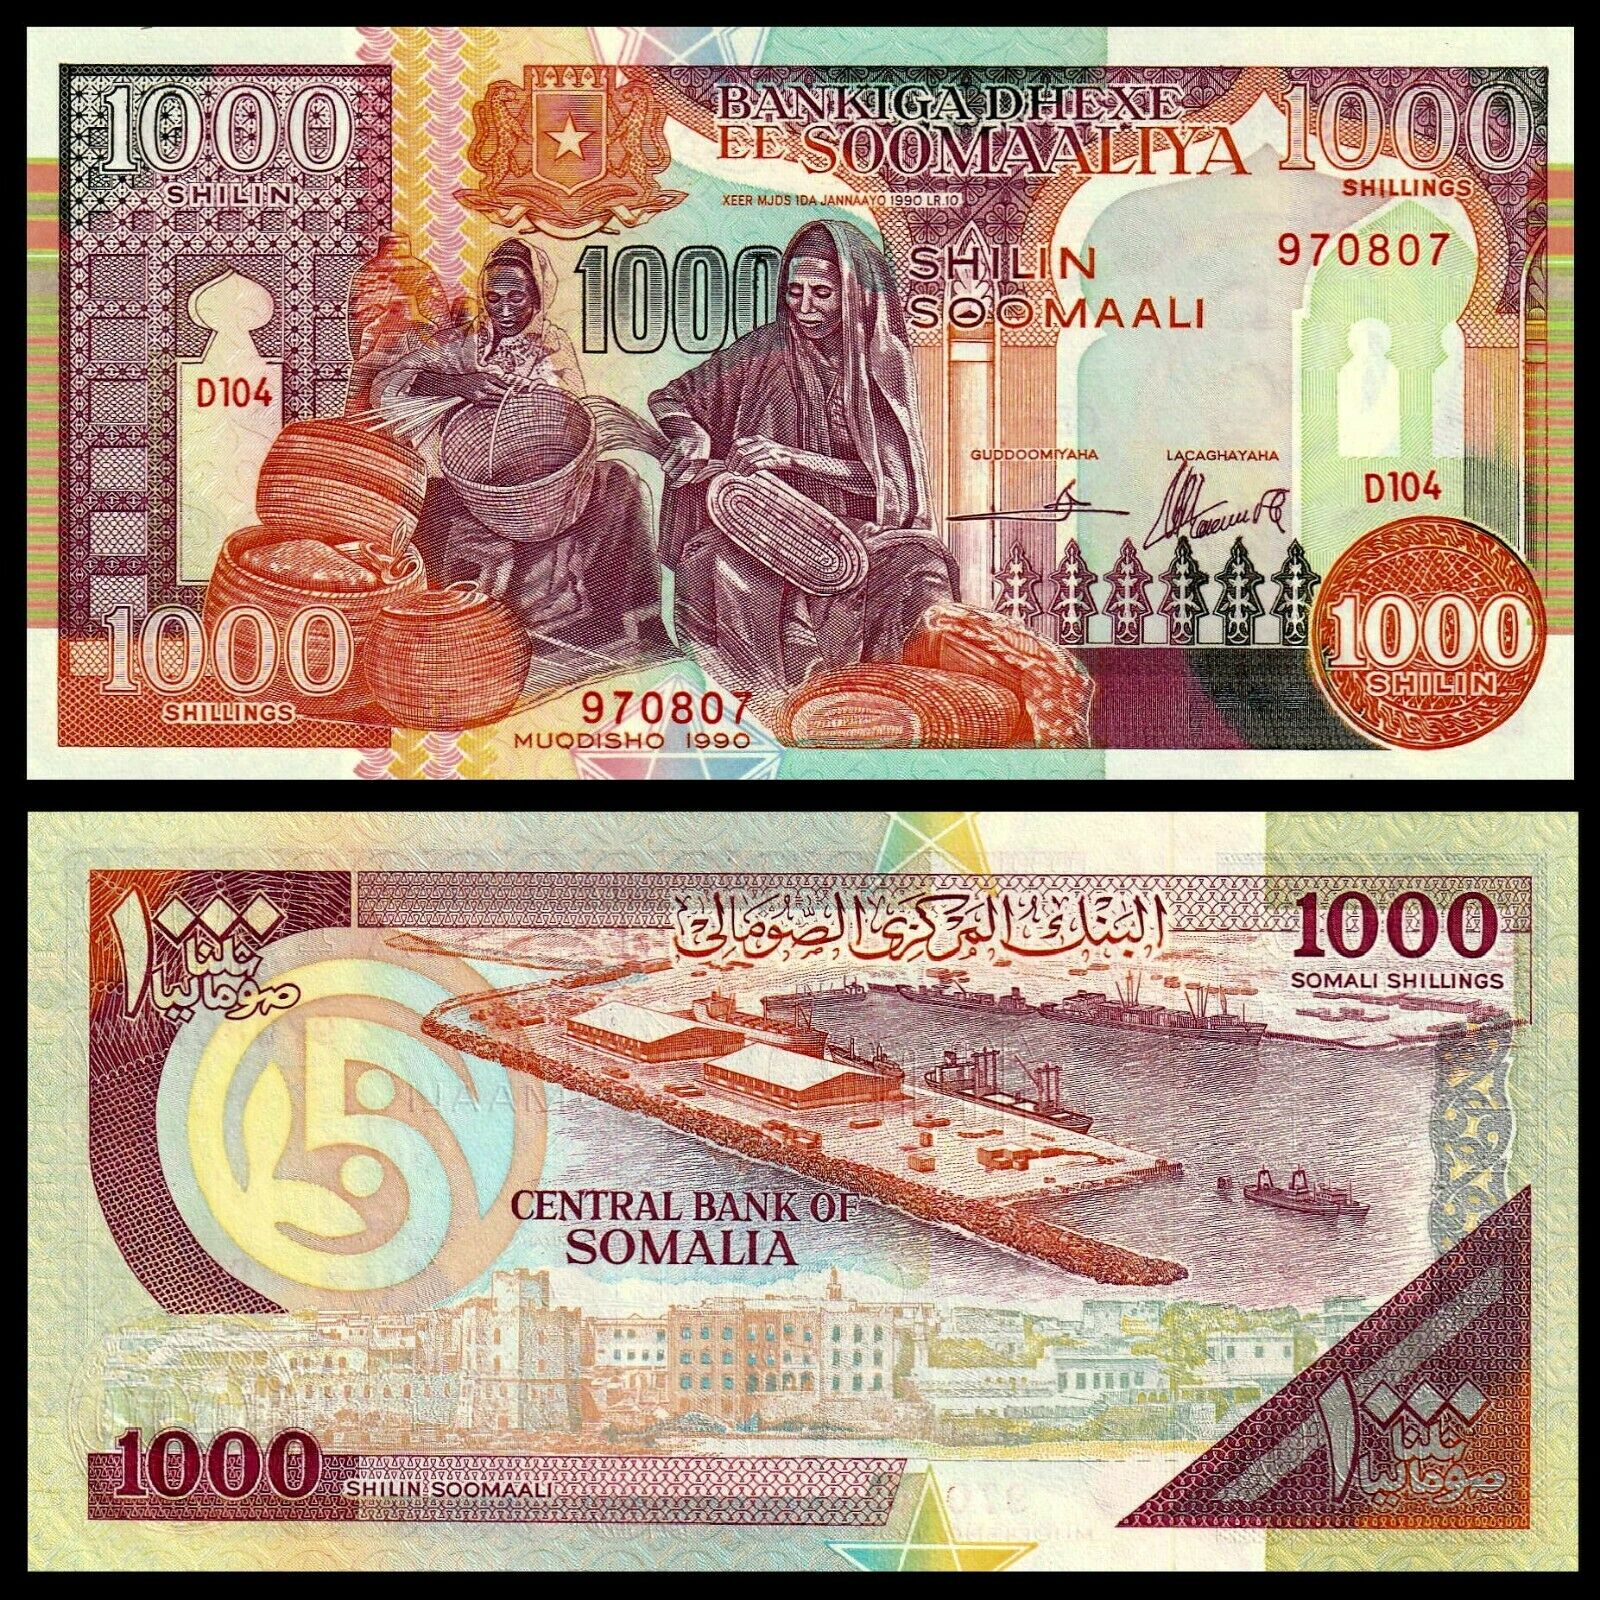 Somalia, 1000 Shillings, 1990 (2000), P-r10, Puntland Region, Unc